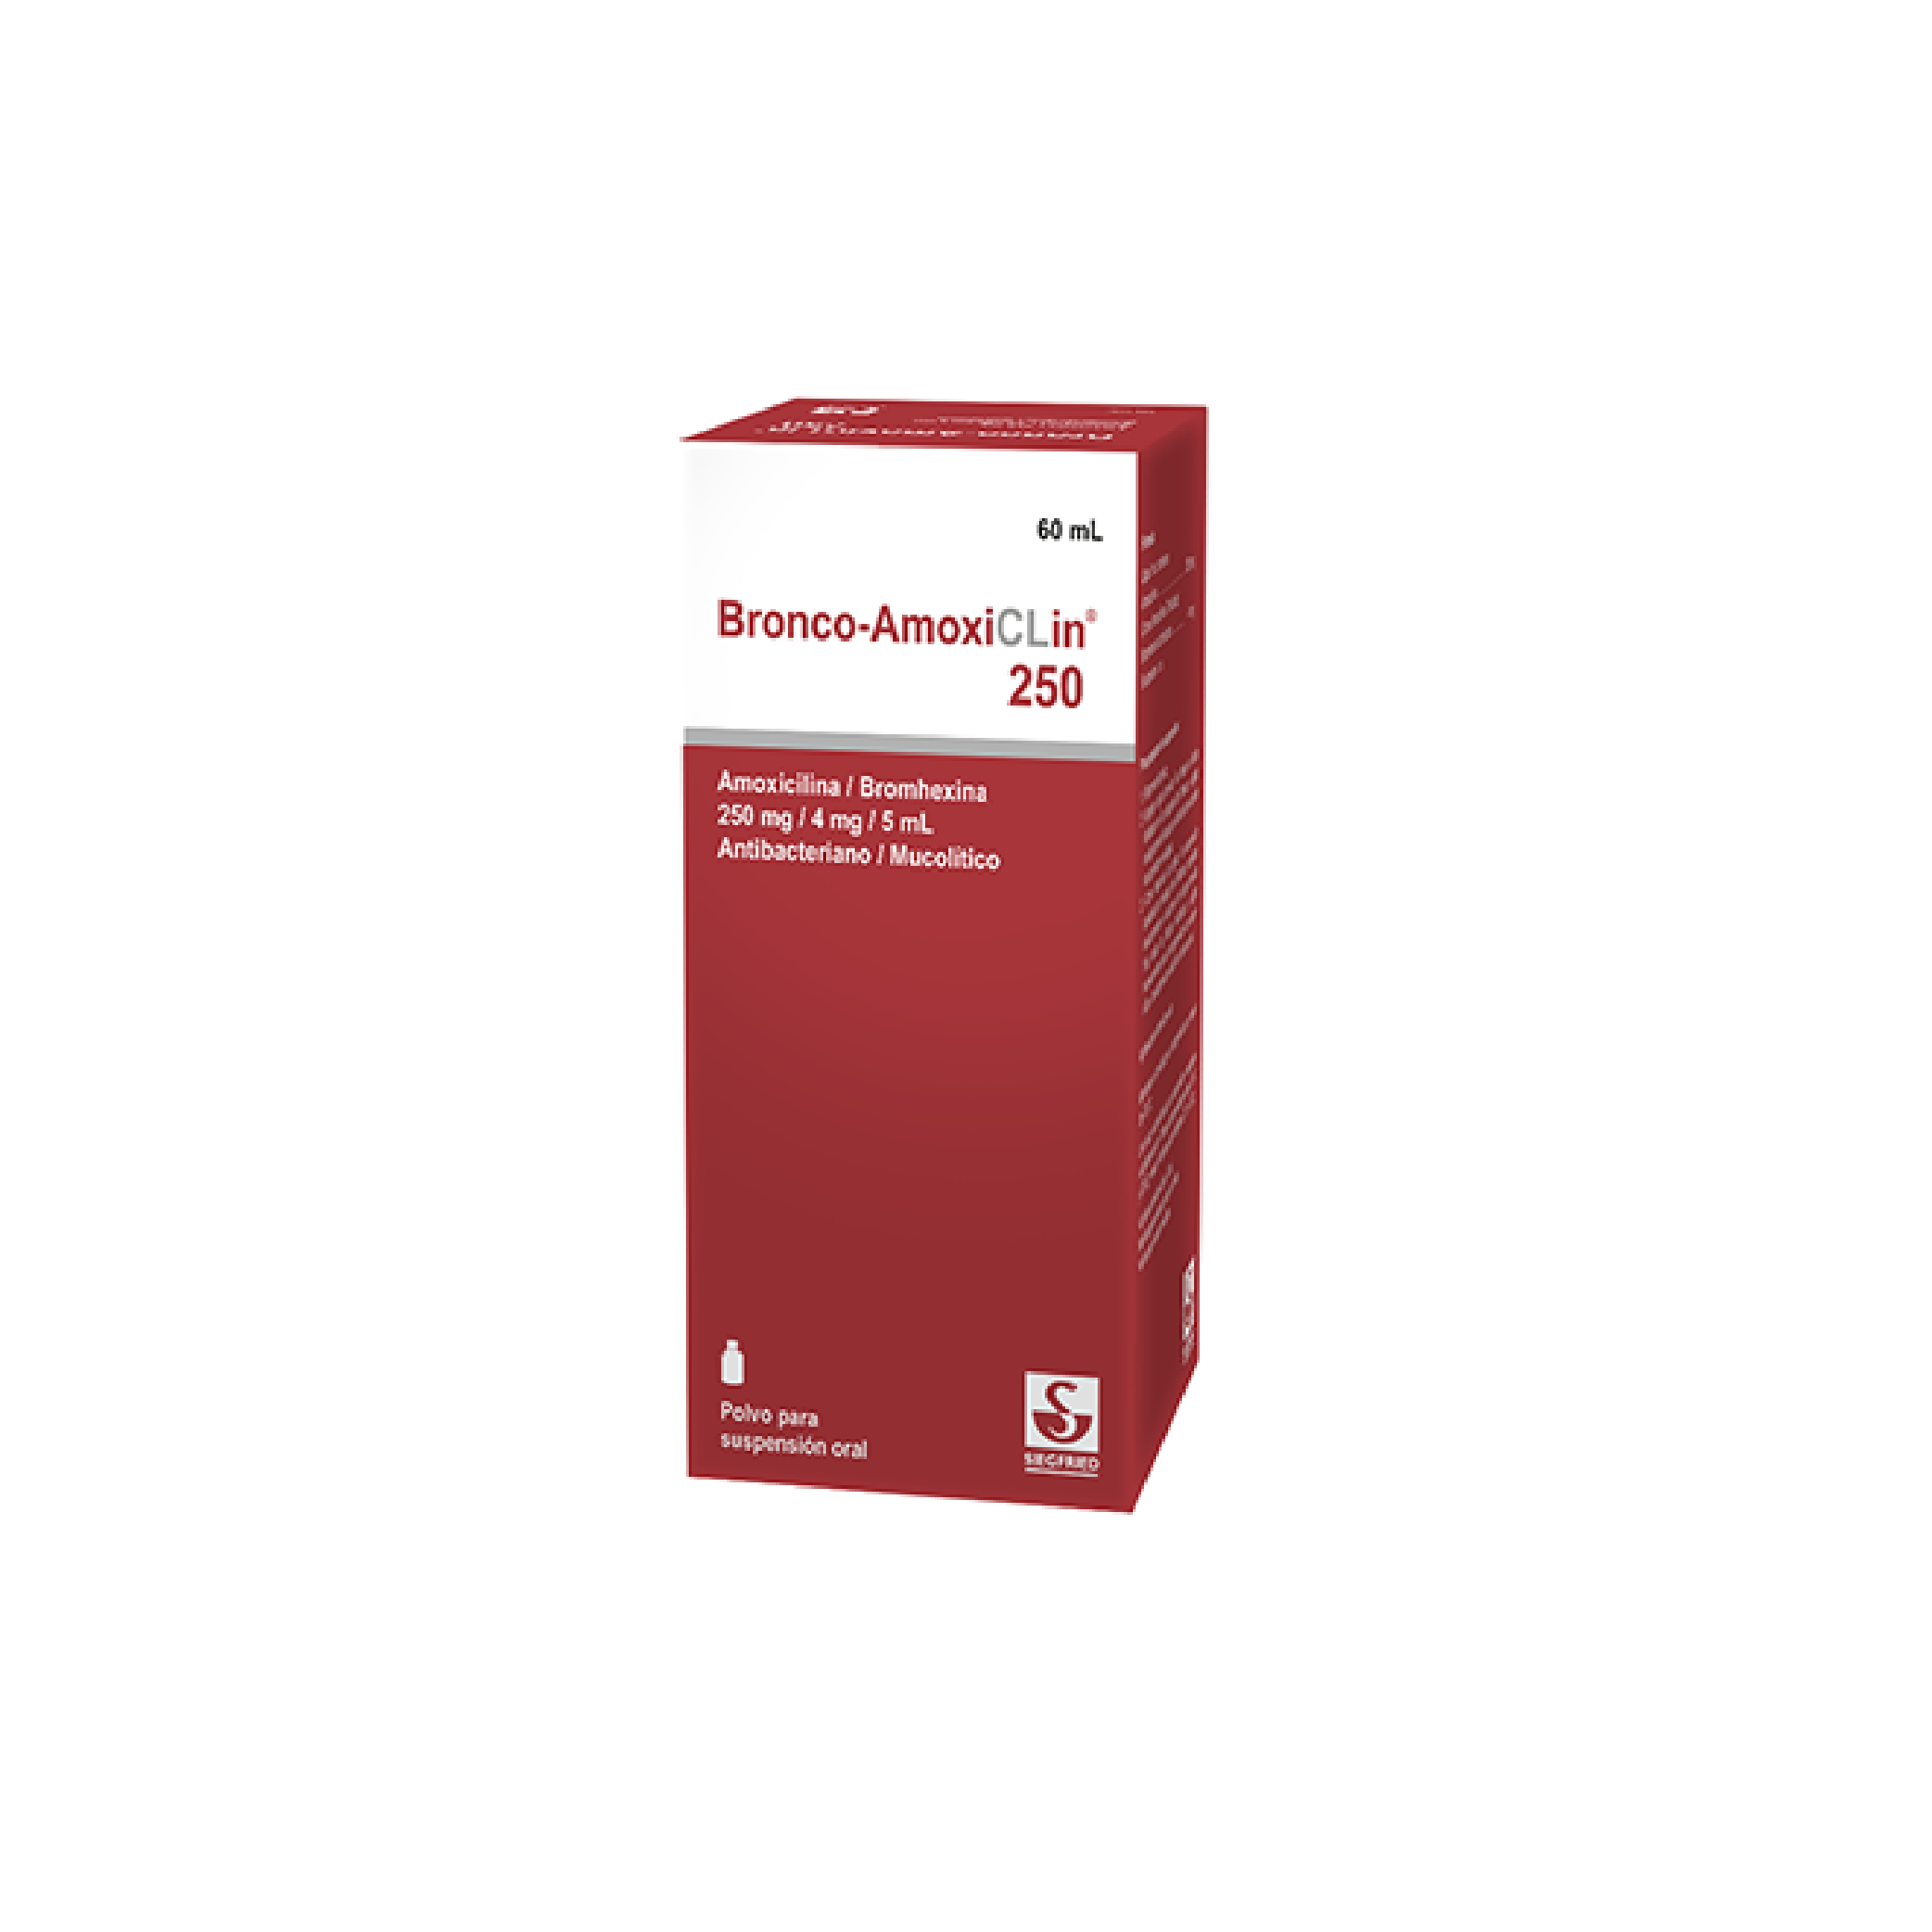 Bronco-Amoxiclin 250 mg Suspensión Oral - Frasco 60 Ml